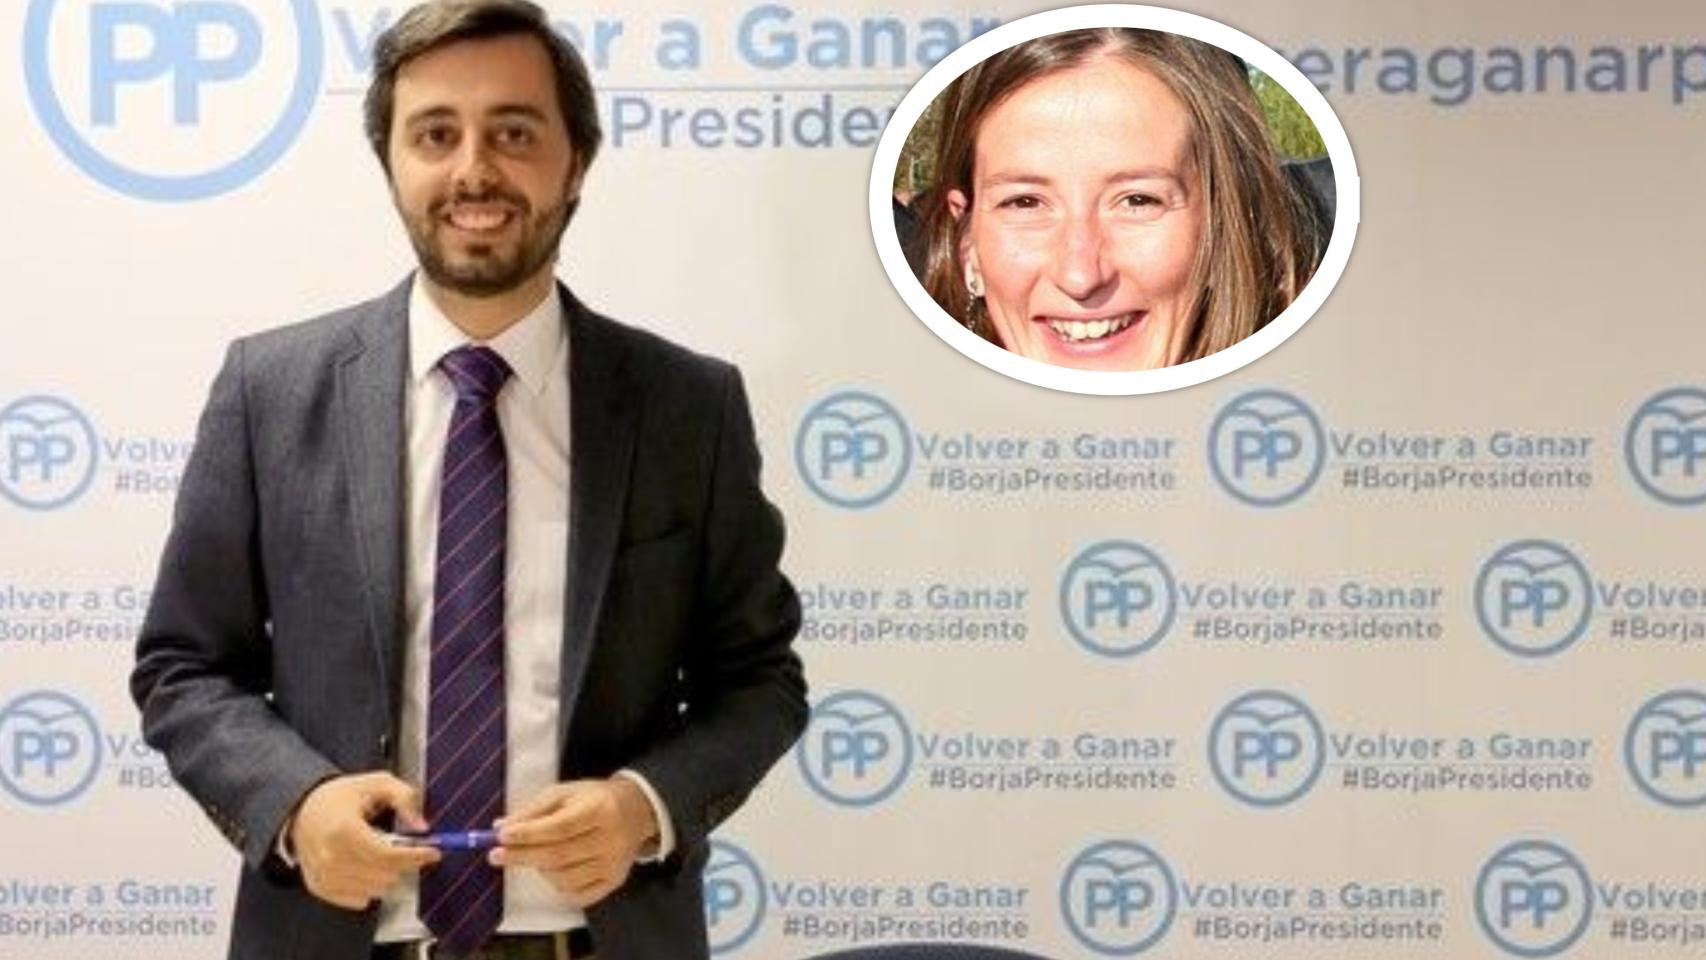 El PPCyL cesa como gerente a Borja García Carvajal y nombra a Paloma de Bonrostro